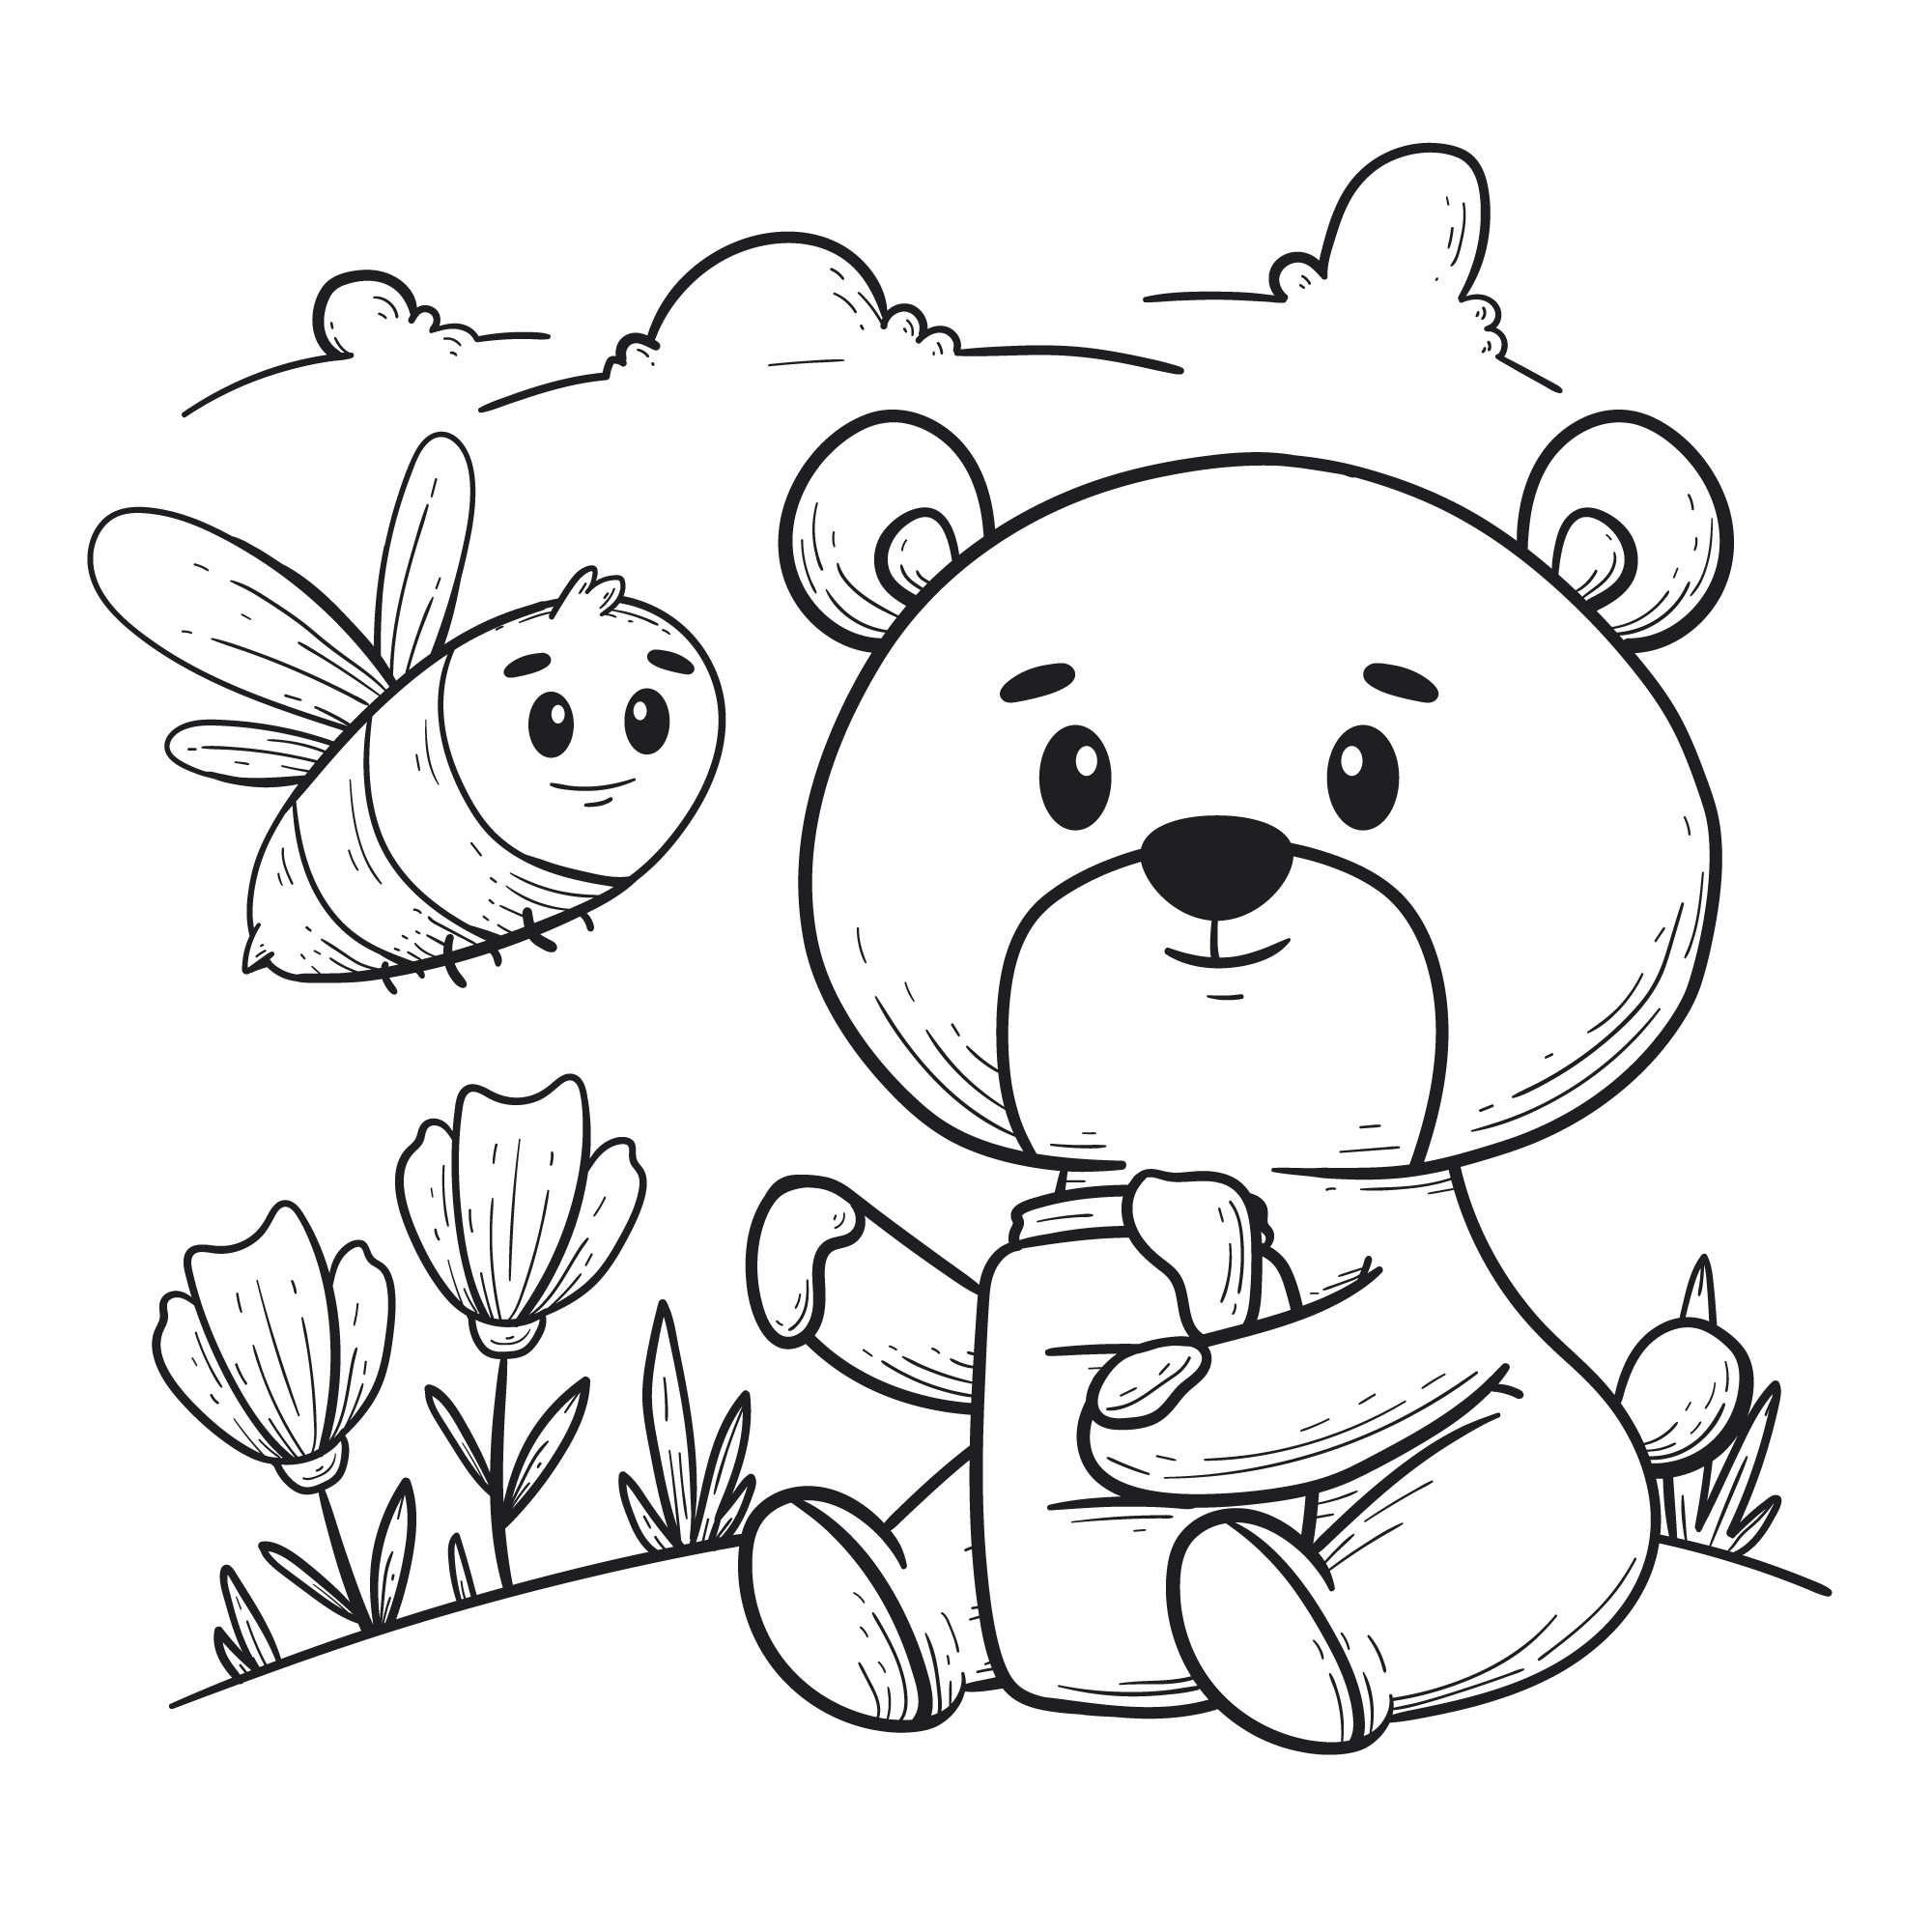 Раскраска для детей: мультяшный медведь с медом и пчелой на поляне с цветами